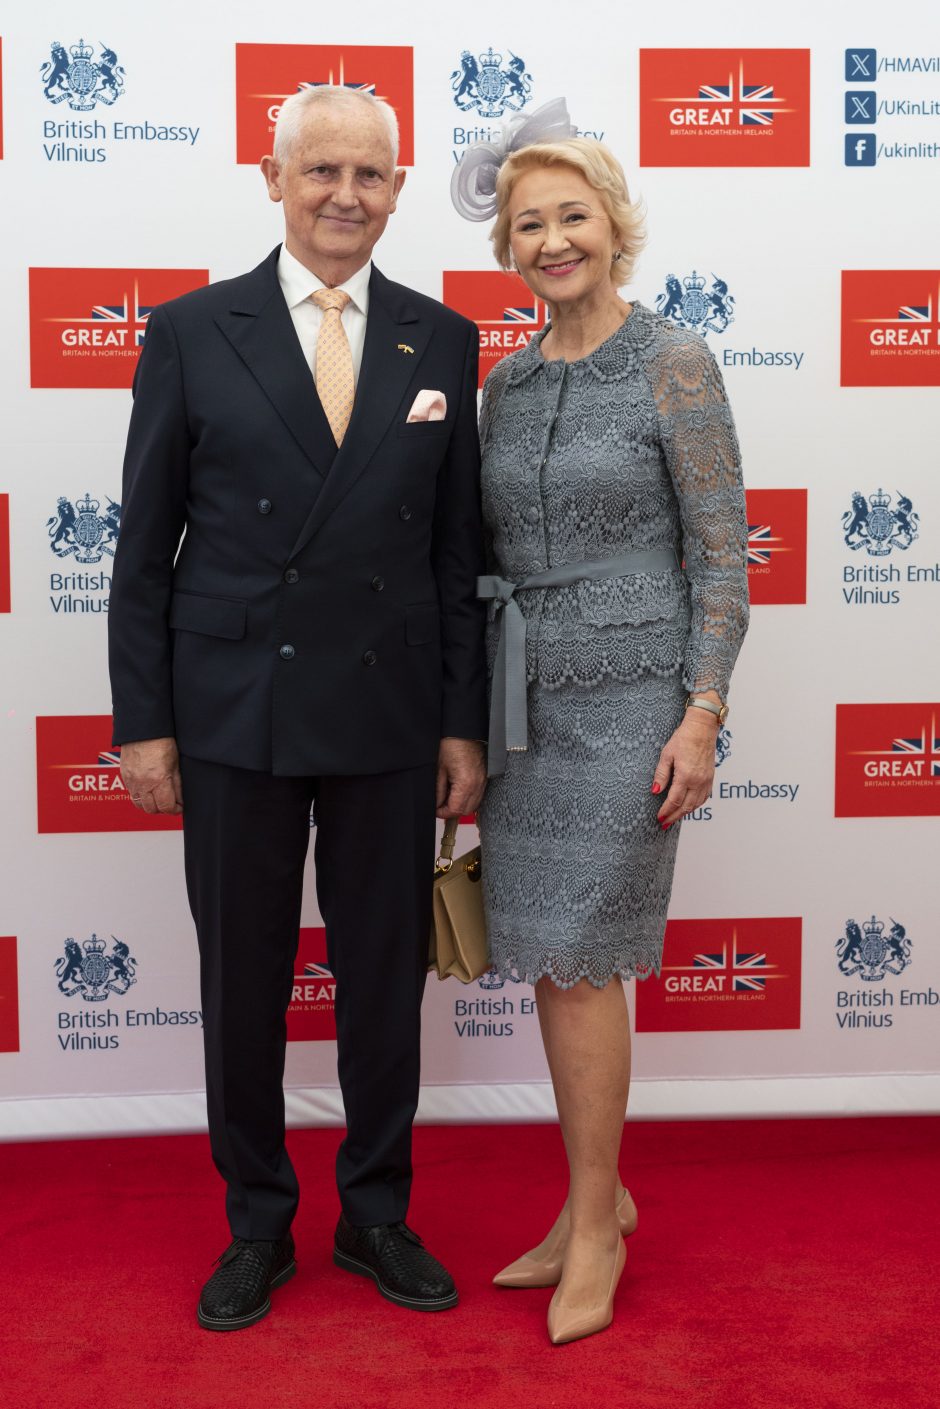 Didžiosios Britanijos ambasadoje – Karaliaus gimtadienis